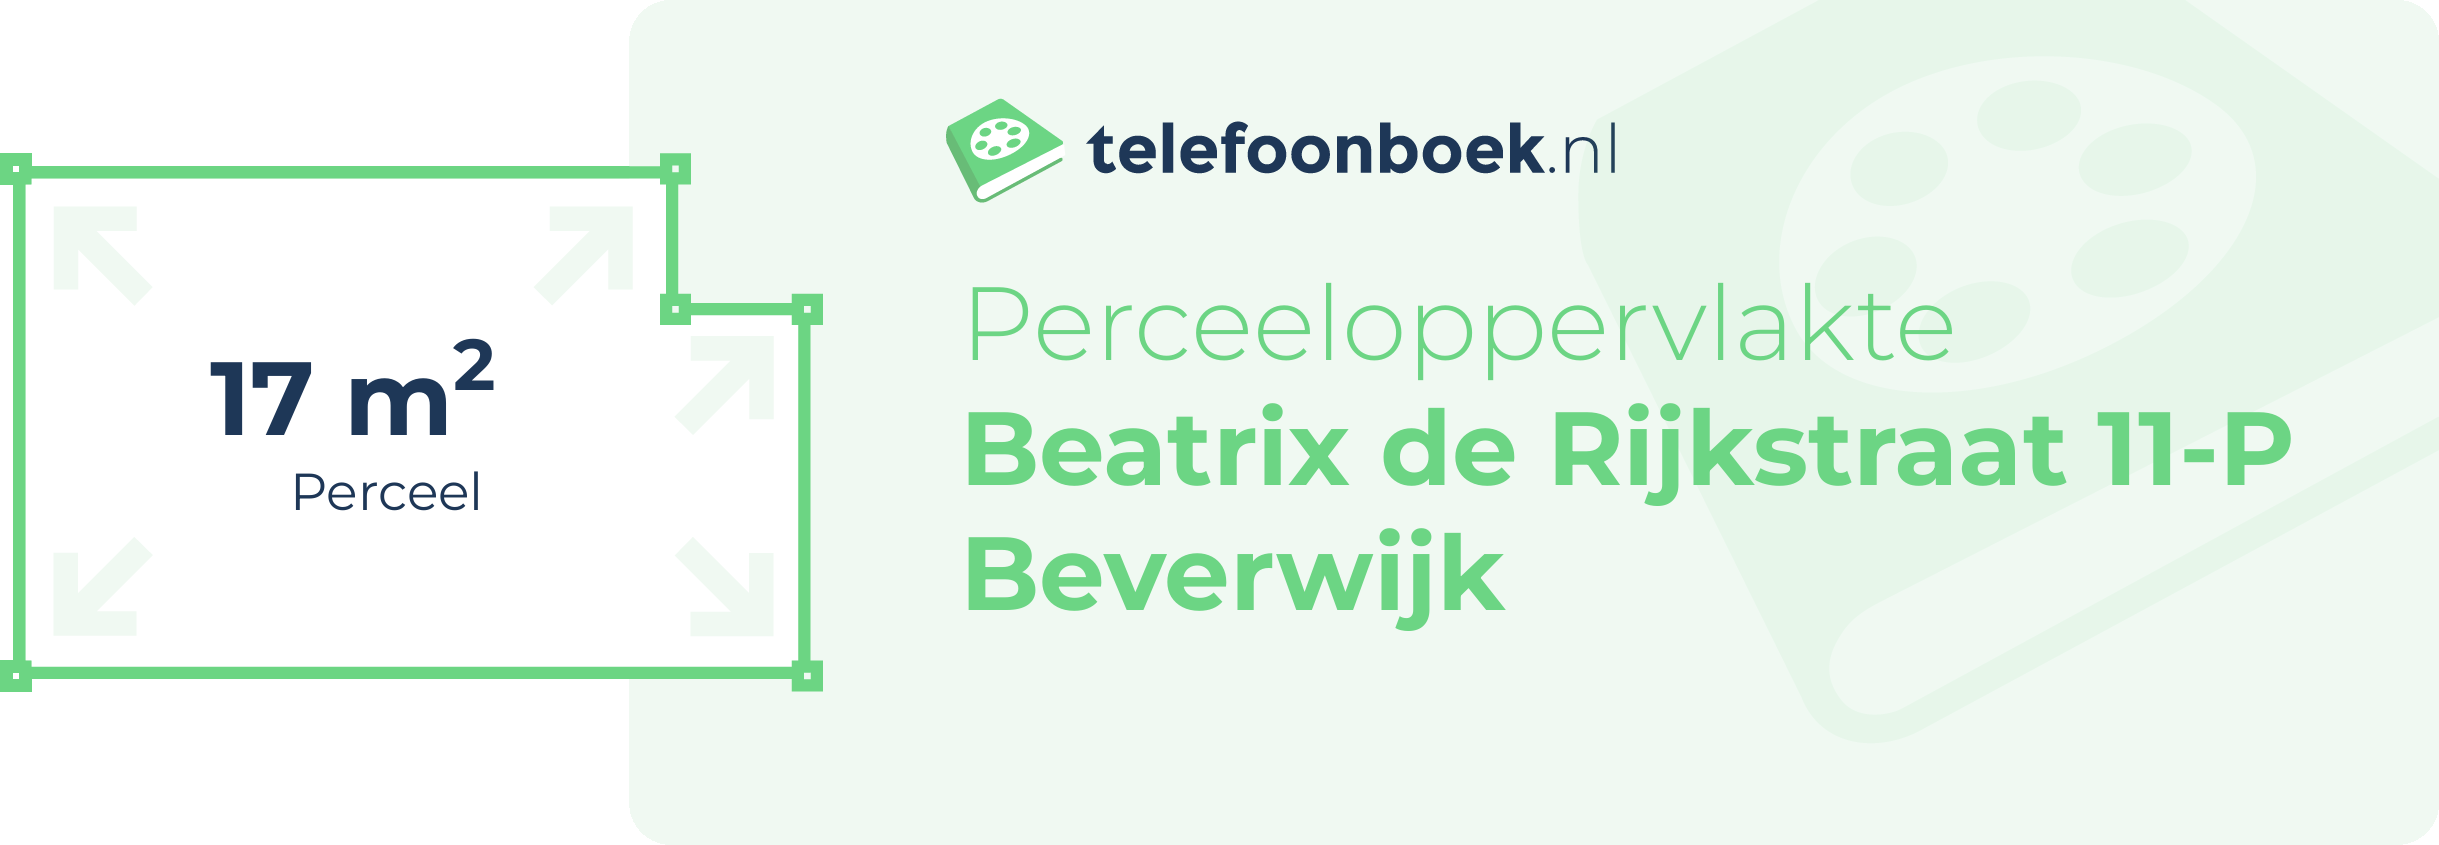 Perceeloppervlakte Beatrix De Rijkstraat 11-P Beverwijk